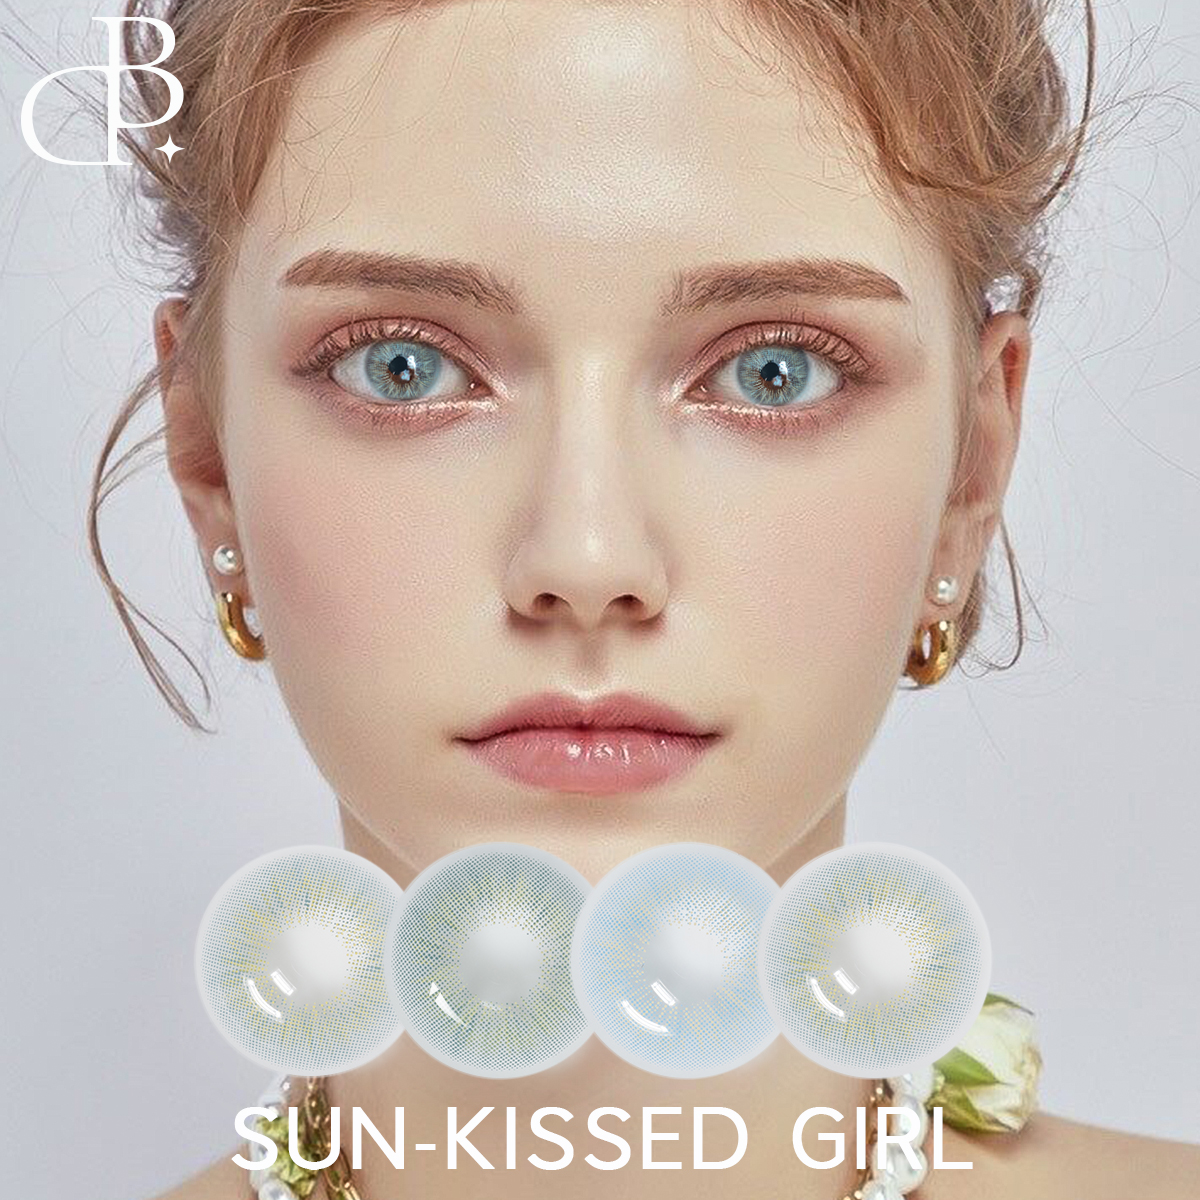 SUN-KISSED GIRL 2 Tone kolorowe soczewki kontaktowe hurtownia na receptę koło miękkie roczne wykorzystanie nowe kolorowe soczewki kontaktowe szybka wysyłka